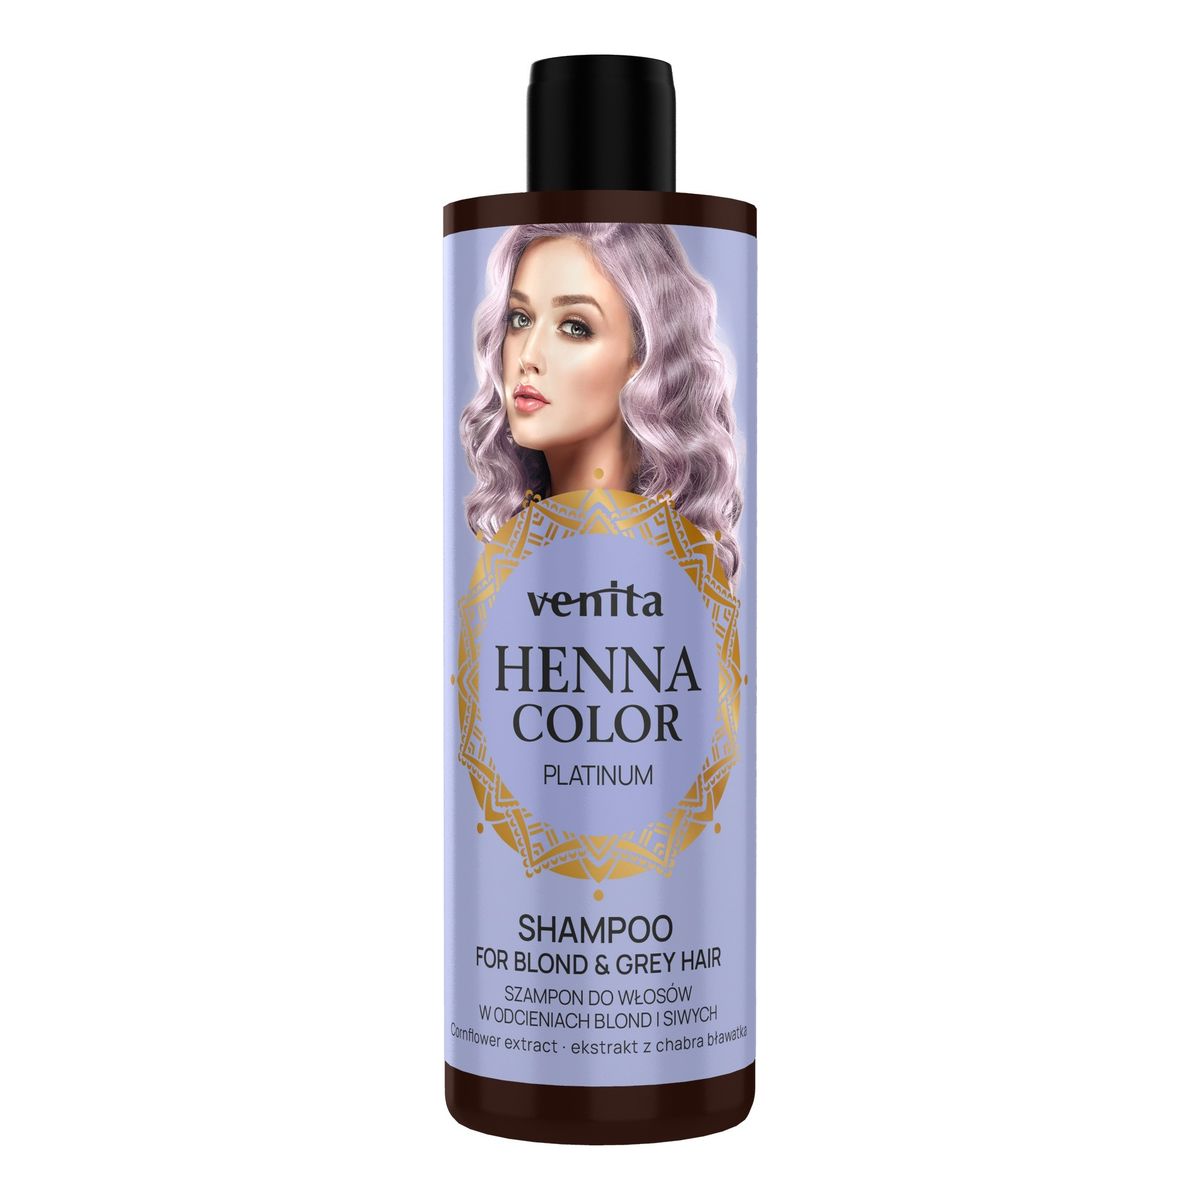 Venita Henna color szampon do włosów w odcieniach blond i siwych-platinum 300ml